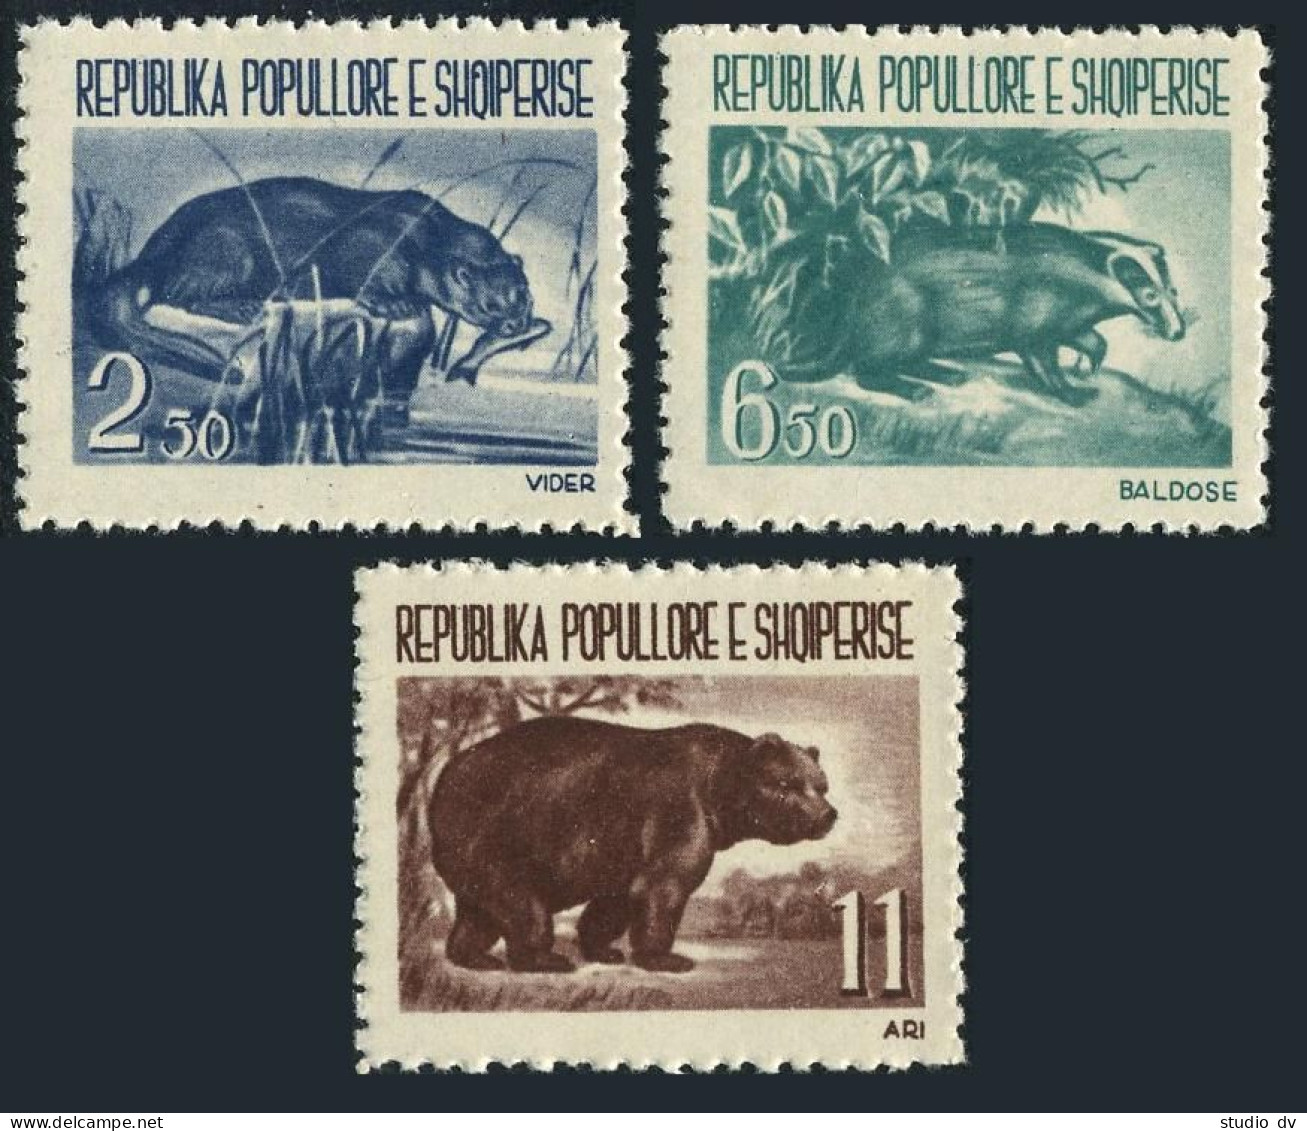 Albania 589-591,MNH.Michel 627-629. Animals 1961.Otter,Badger,Bear. - Albanië